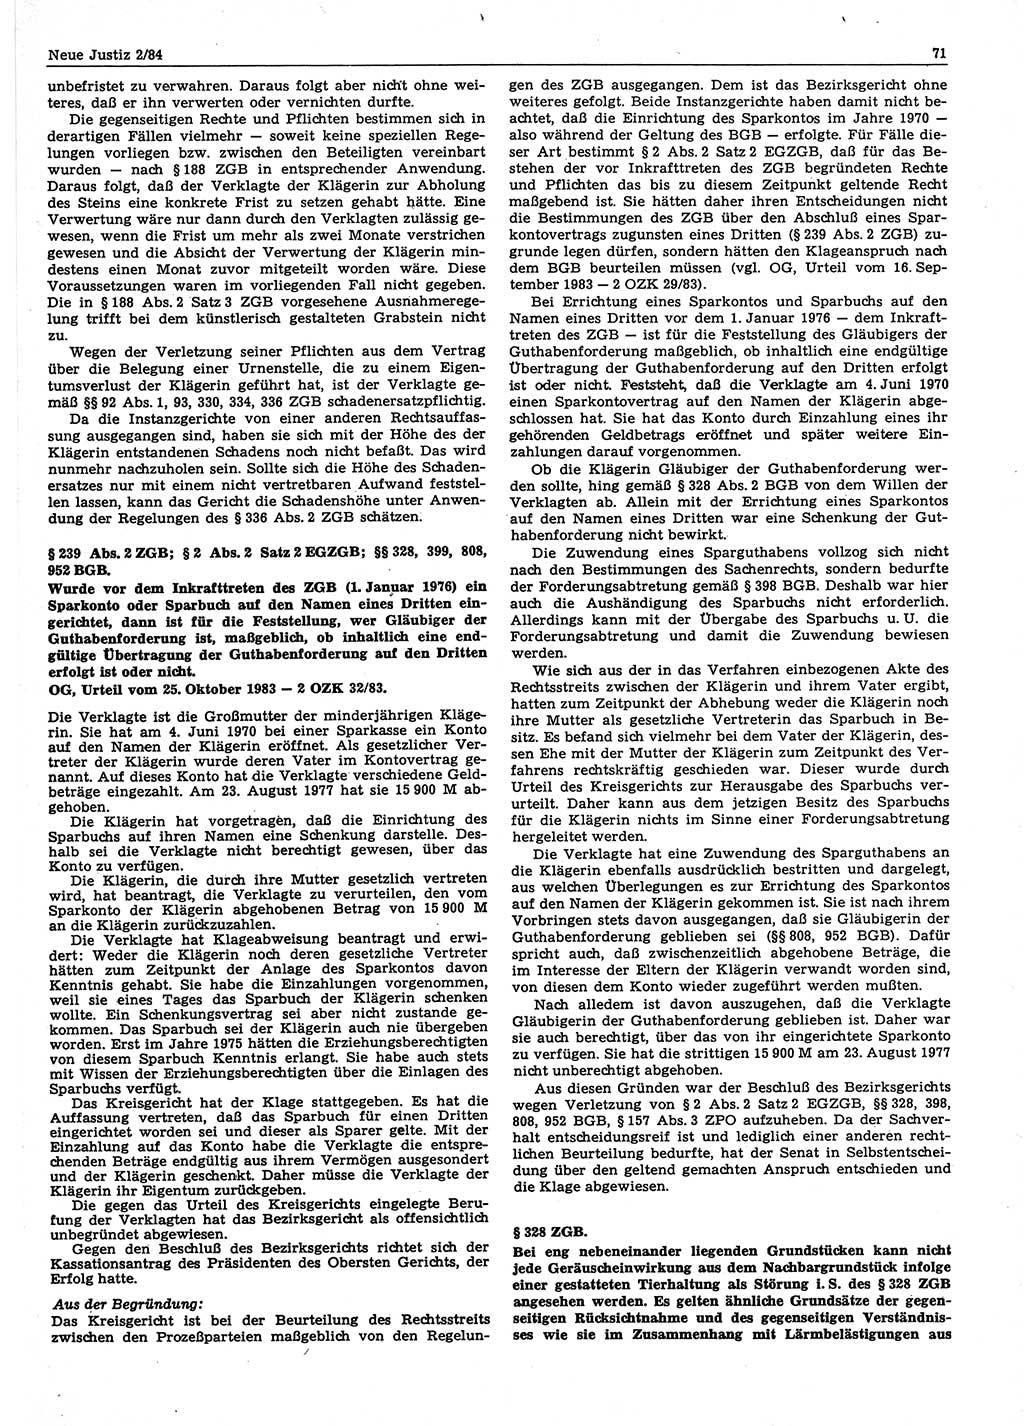 Neue Justiz (NJ), Zeitschrift für sozialistisches Recht und Gesetzlichkeit [Deutsche Demokratische Republik (DDR)], 38. Jahrgang 1984, Seite 71 (NJ DDR 1984, S. 71)